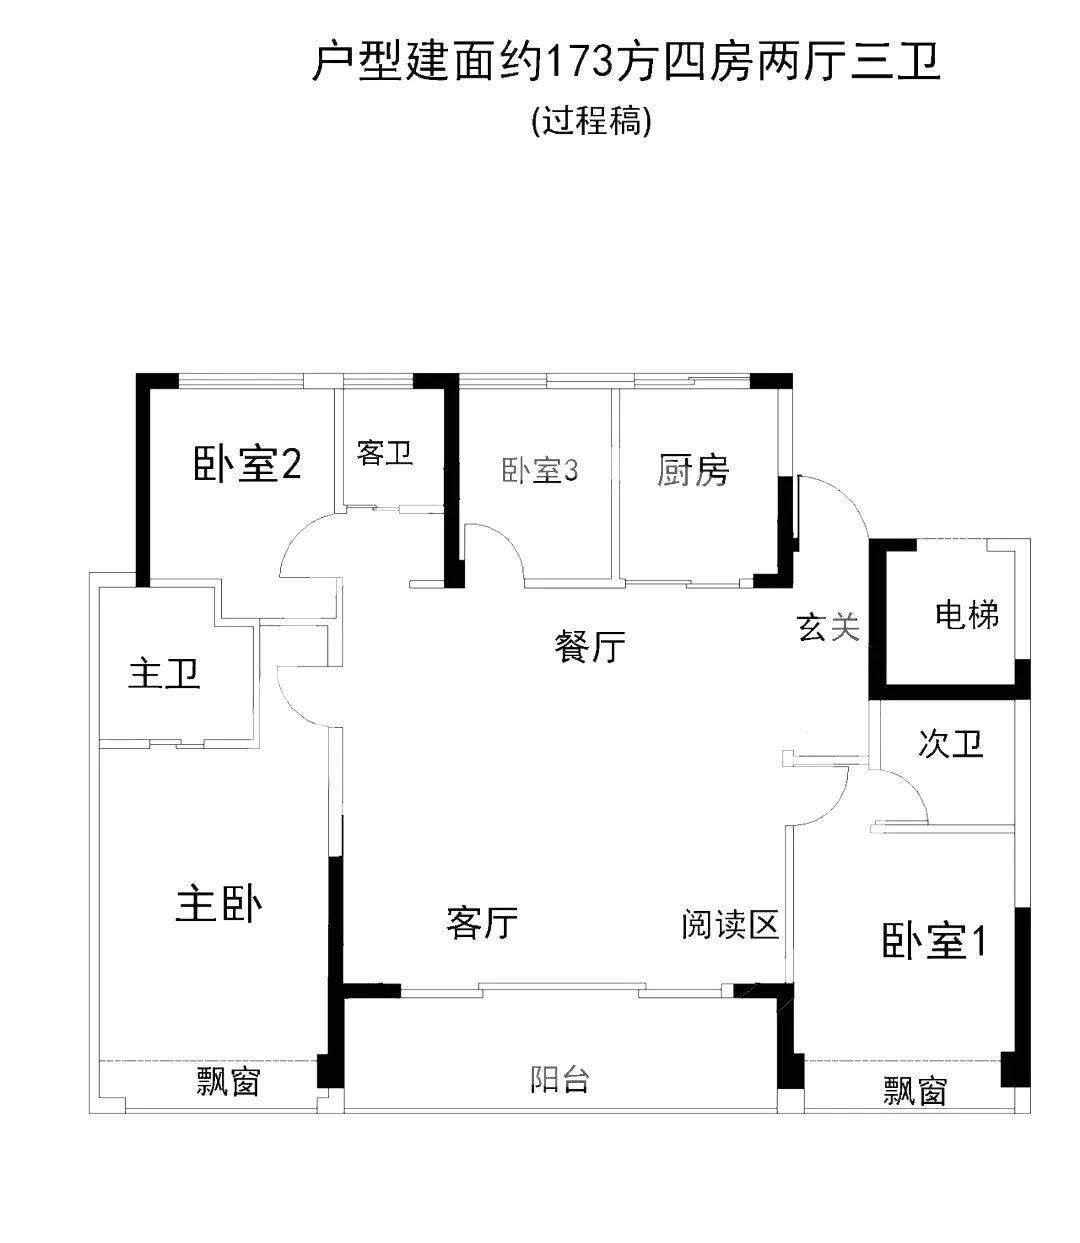 杭州绿城华润晓月映翠173方四房两厅三卫边套